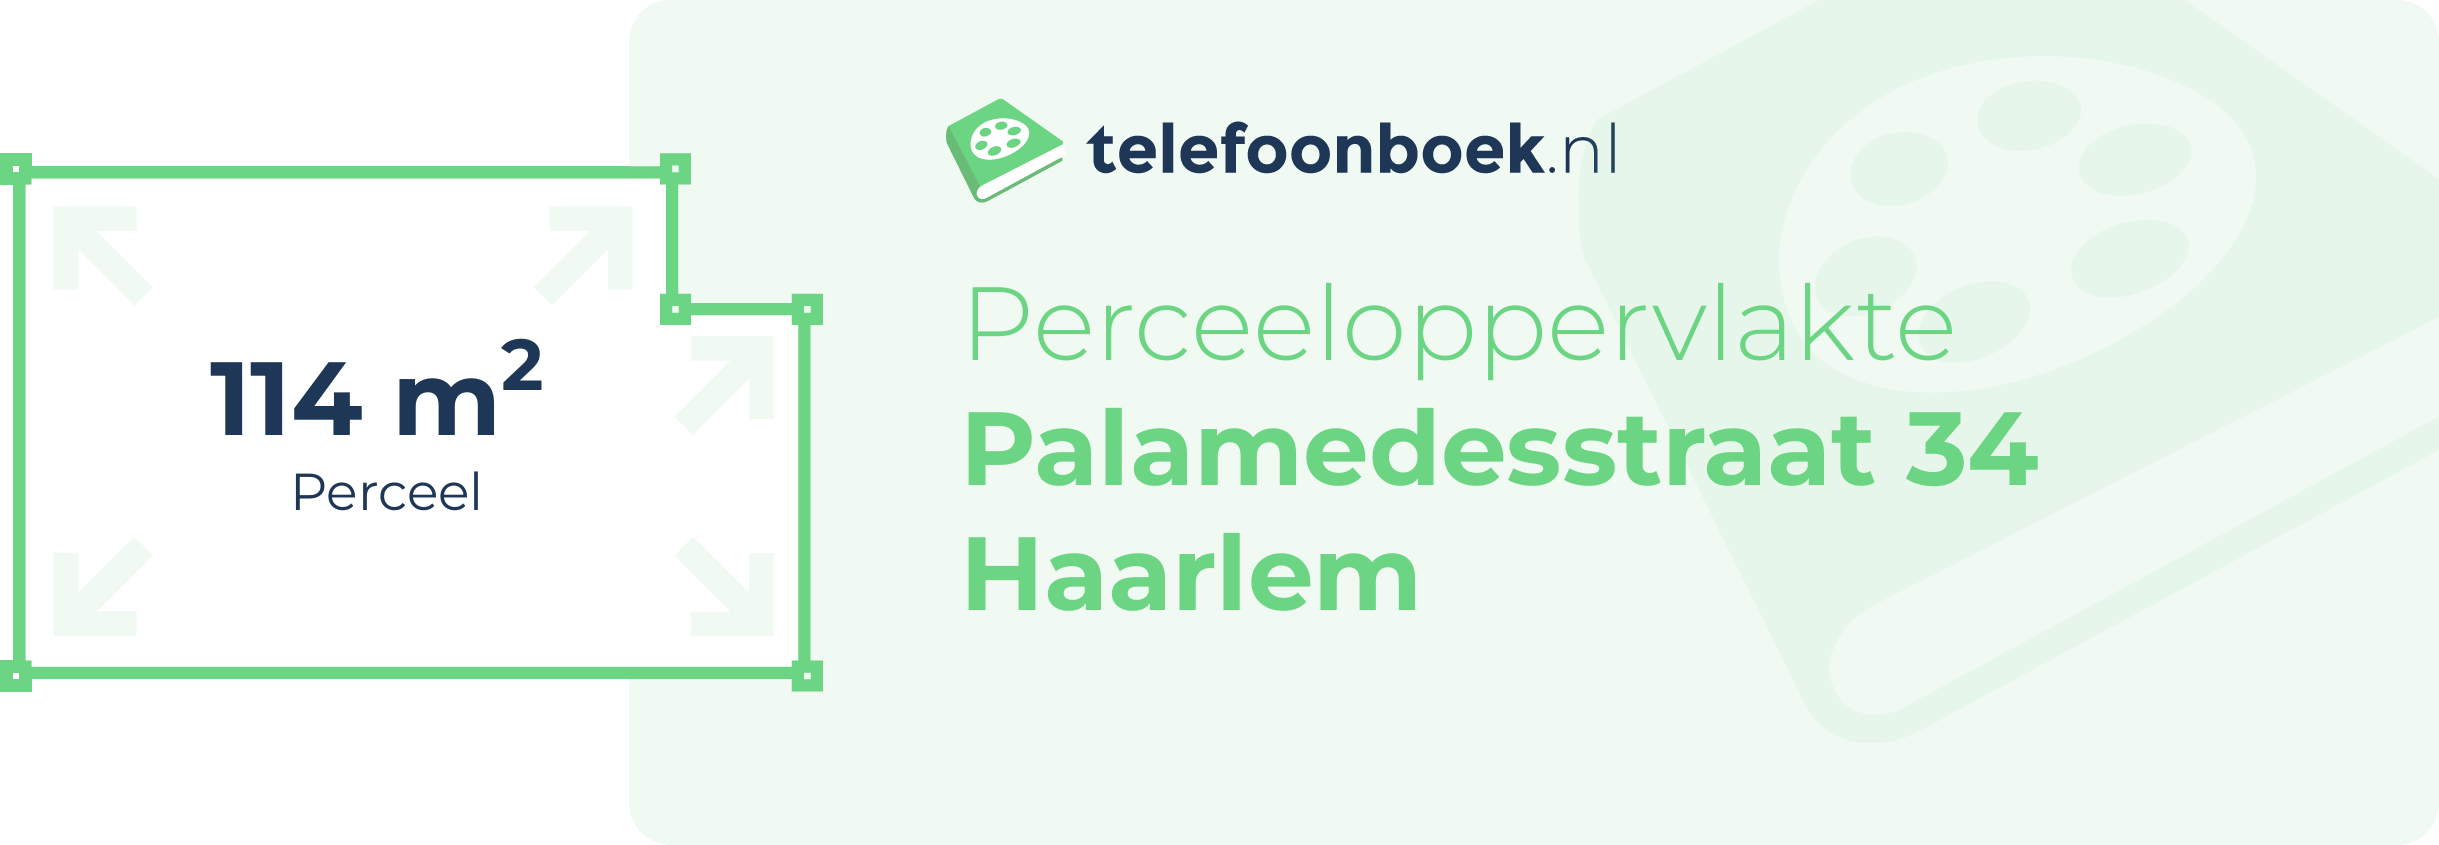 Perceeloppervlakte Palamedesstraat 34 Haarlem